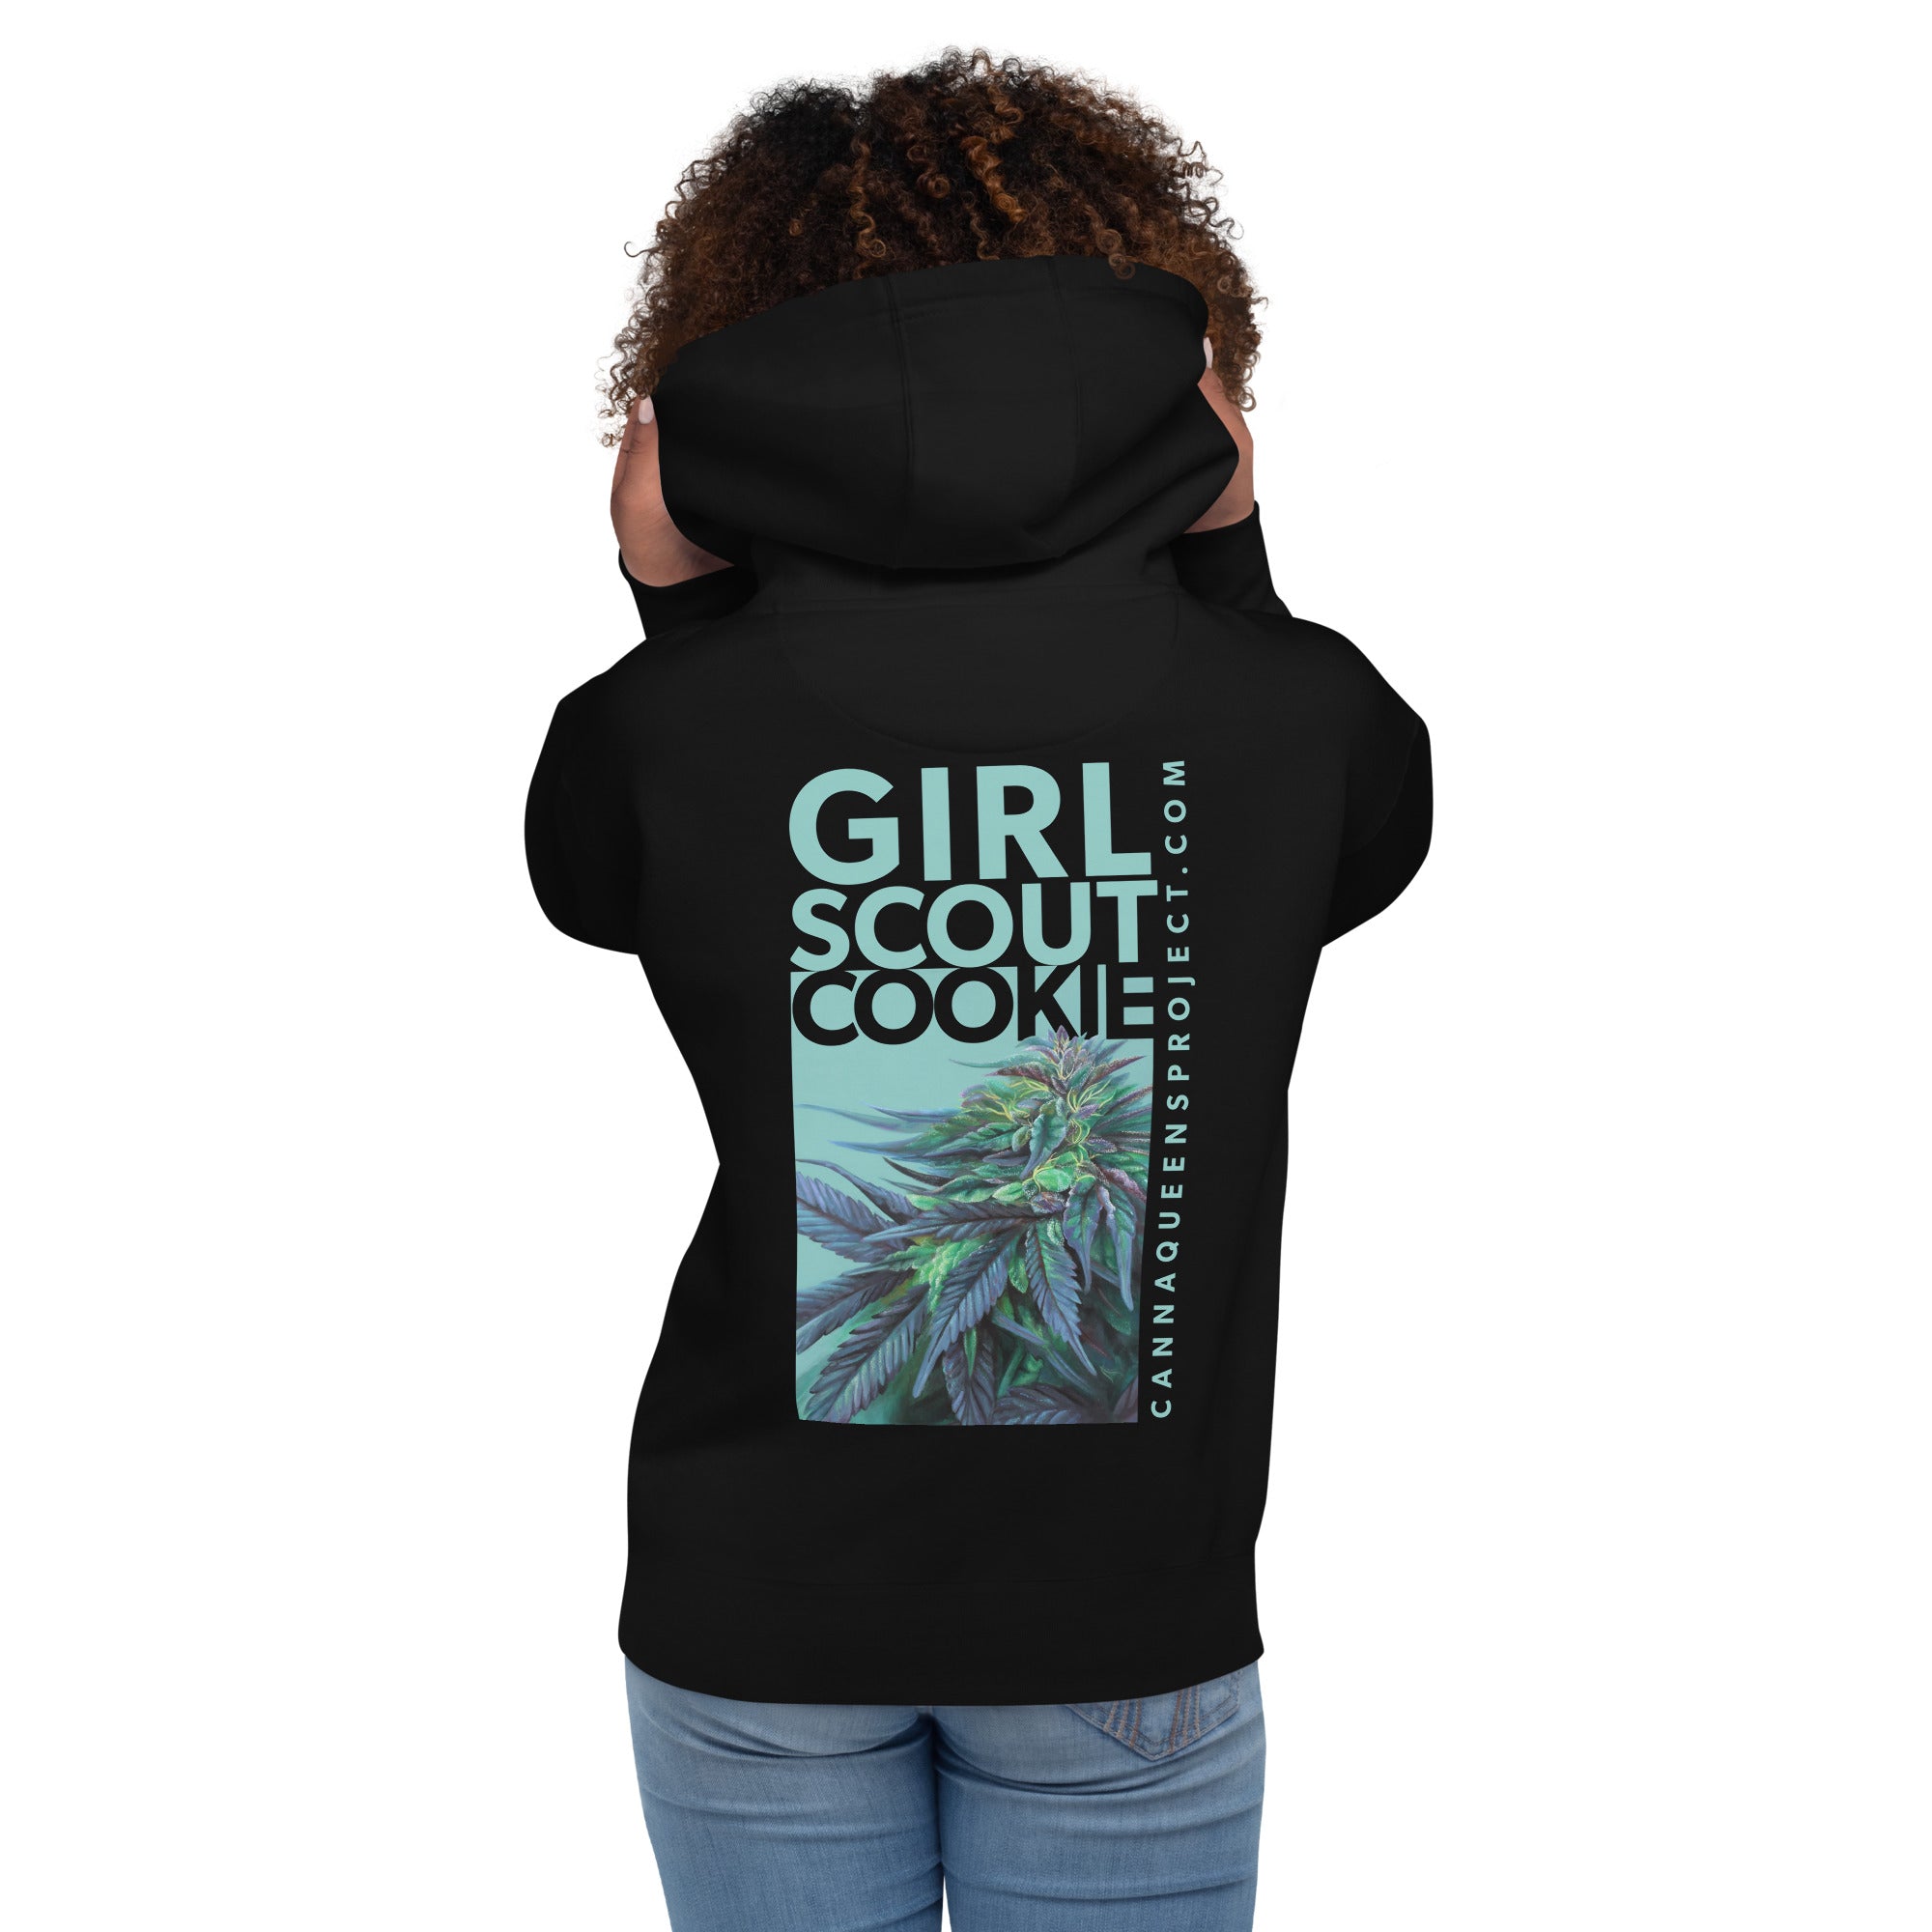 Girl Scout Cookie Hoodie